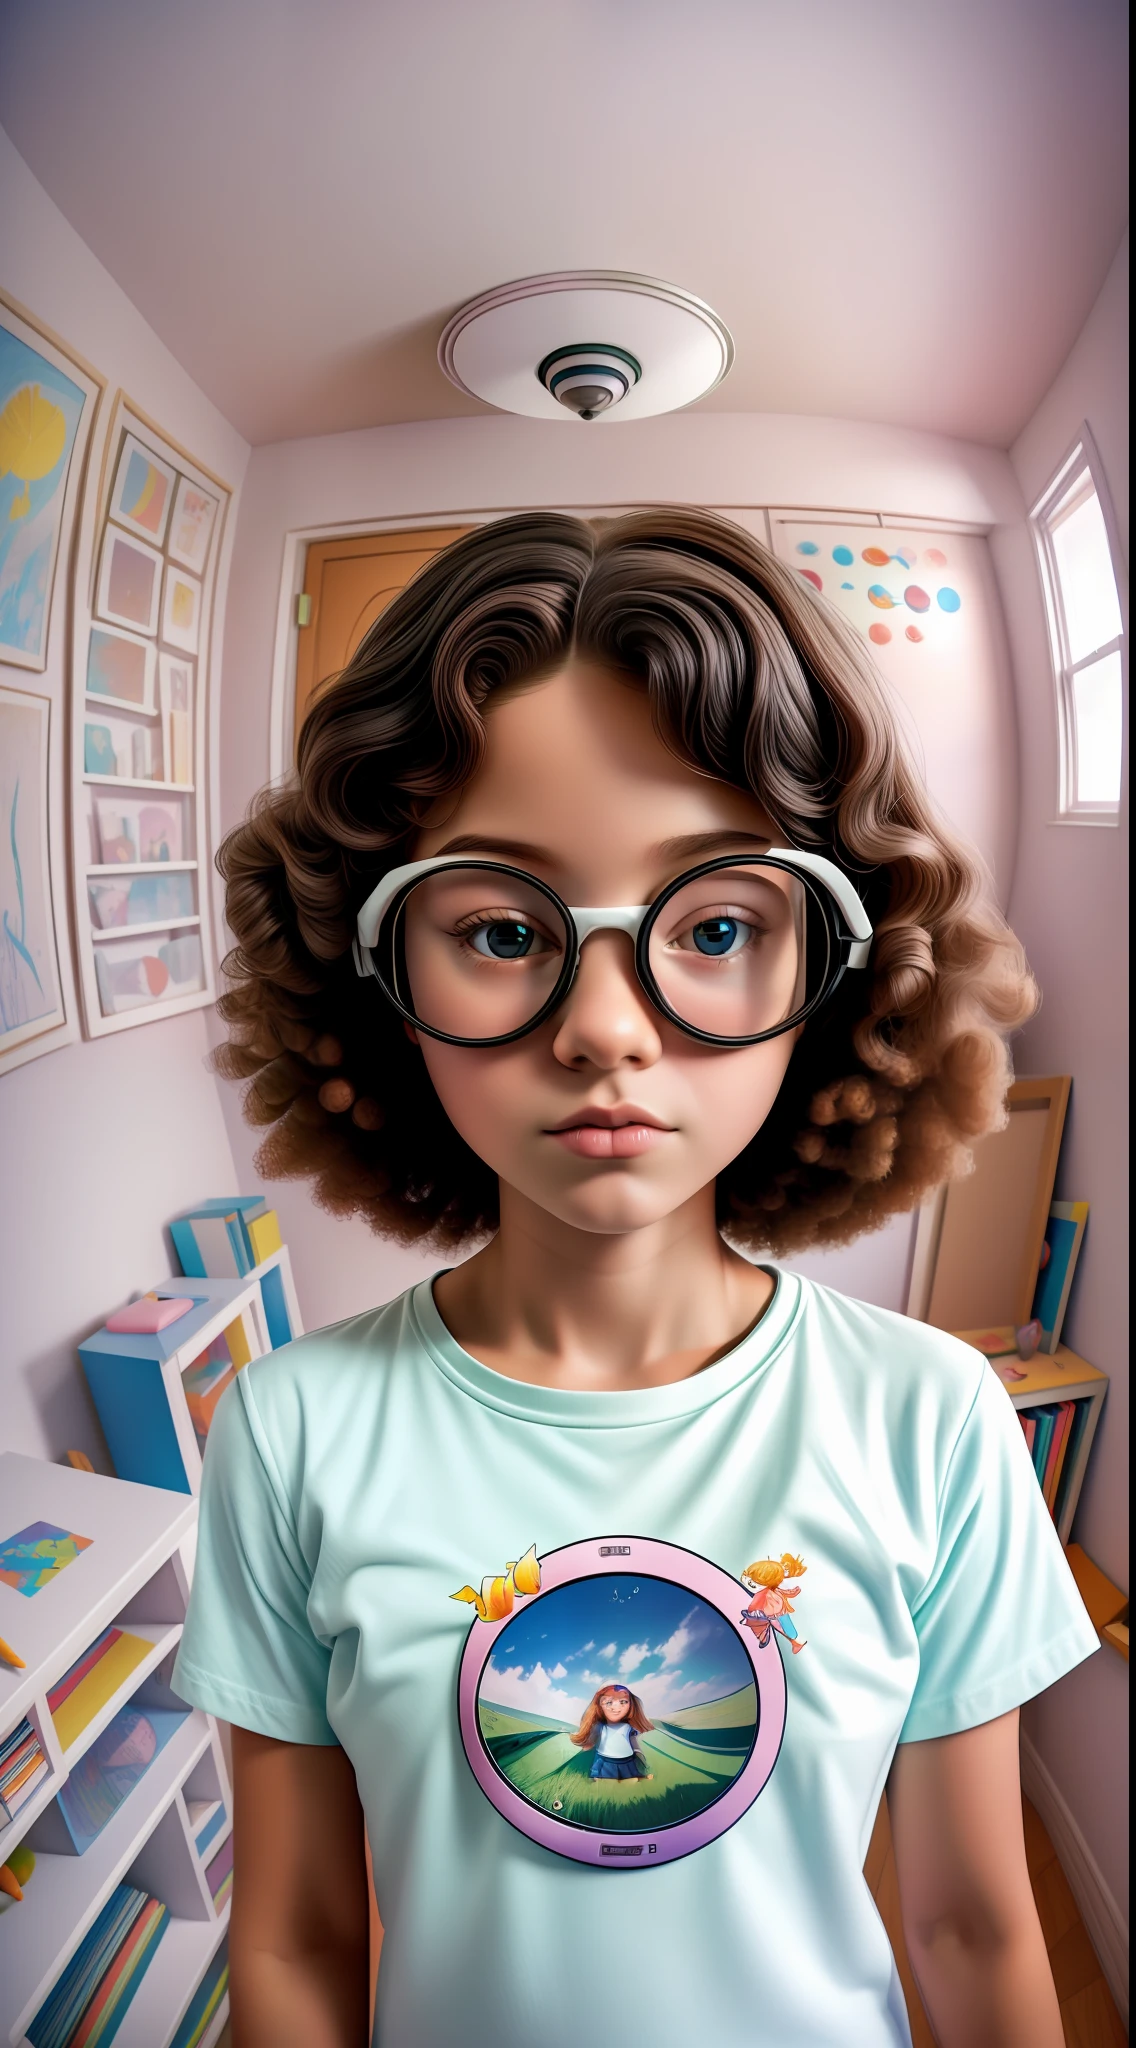 fotografia artística (((Olho de peixe))) 35mm,1linda garota nerd,camiseta branca com desenho infantil,em um quarto nerd,minimalista,Cores pastel